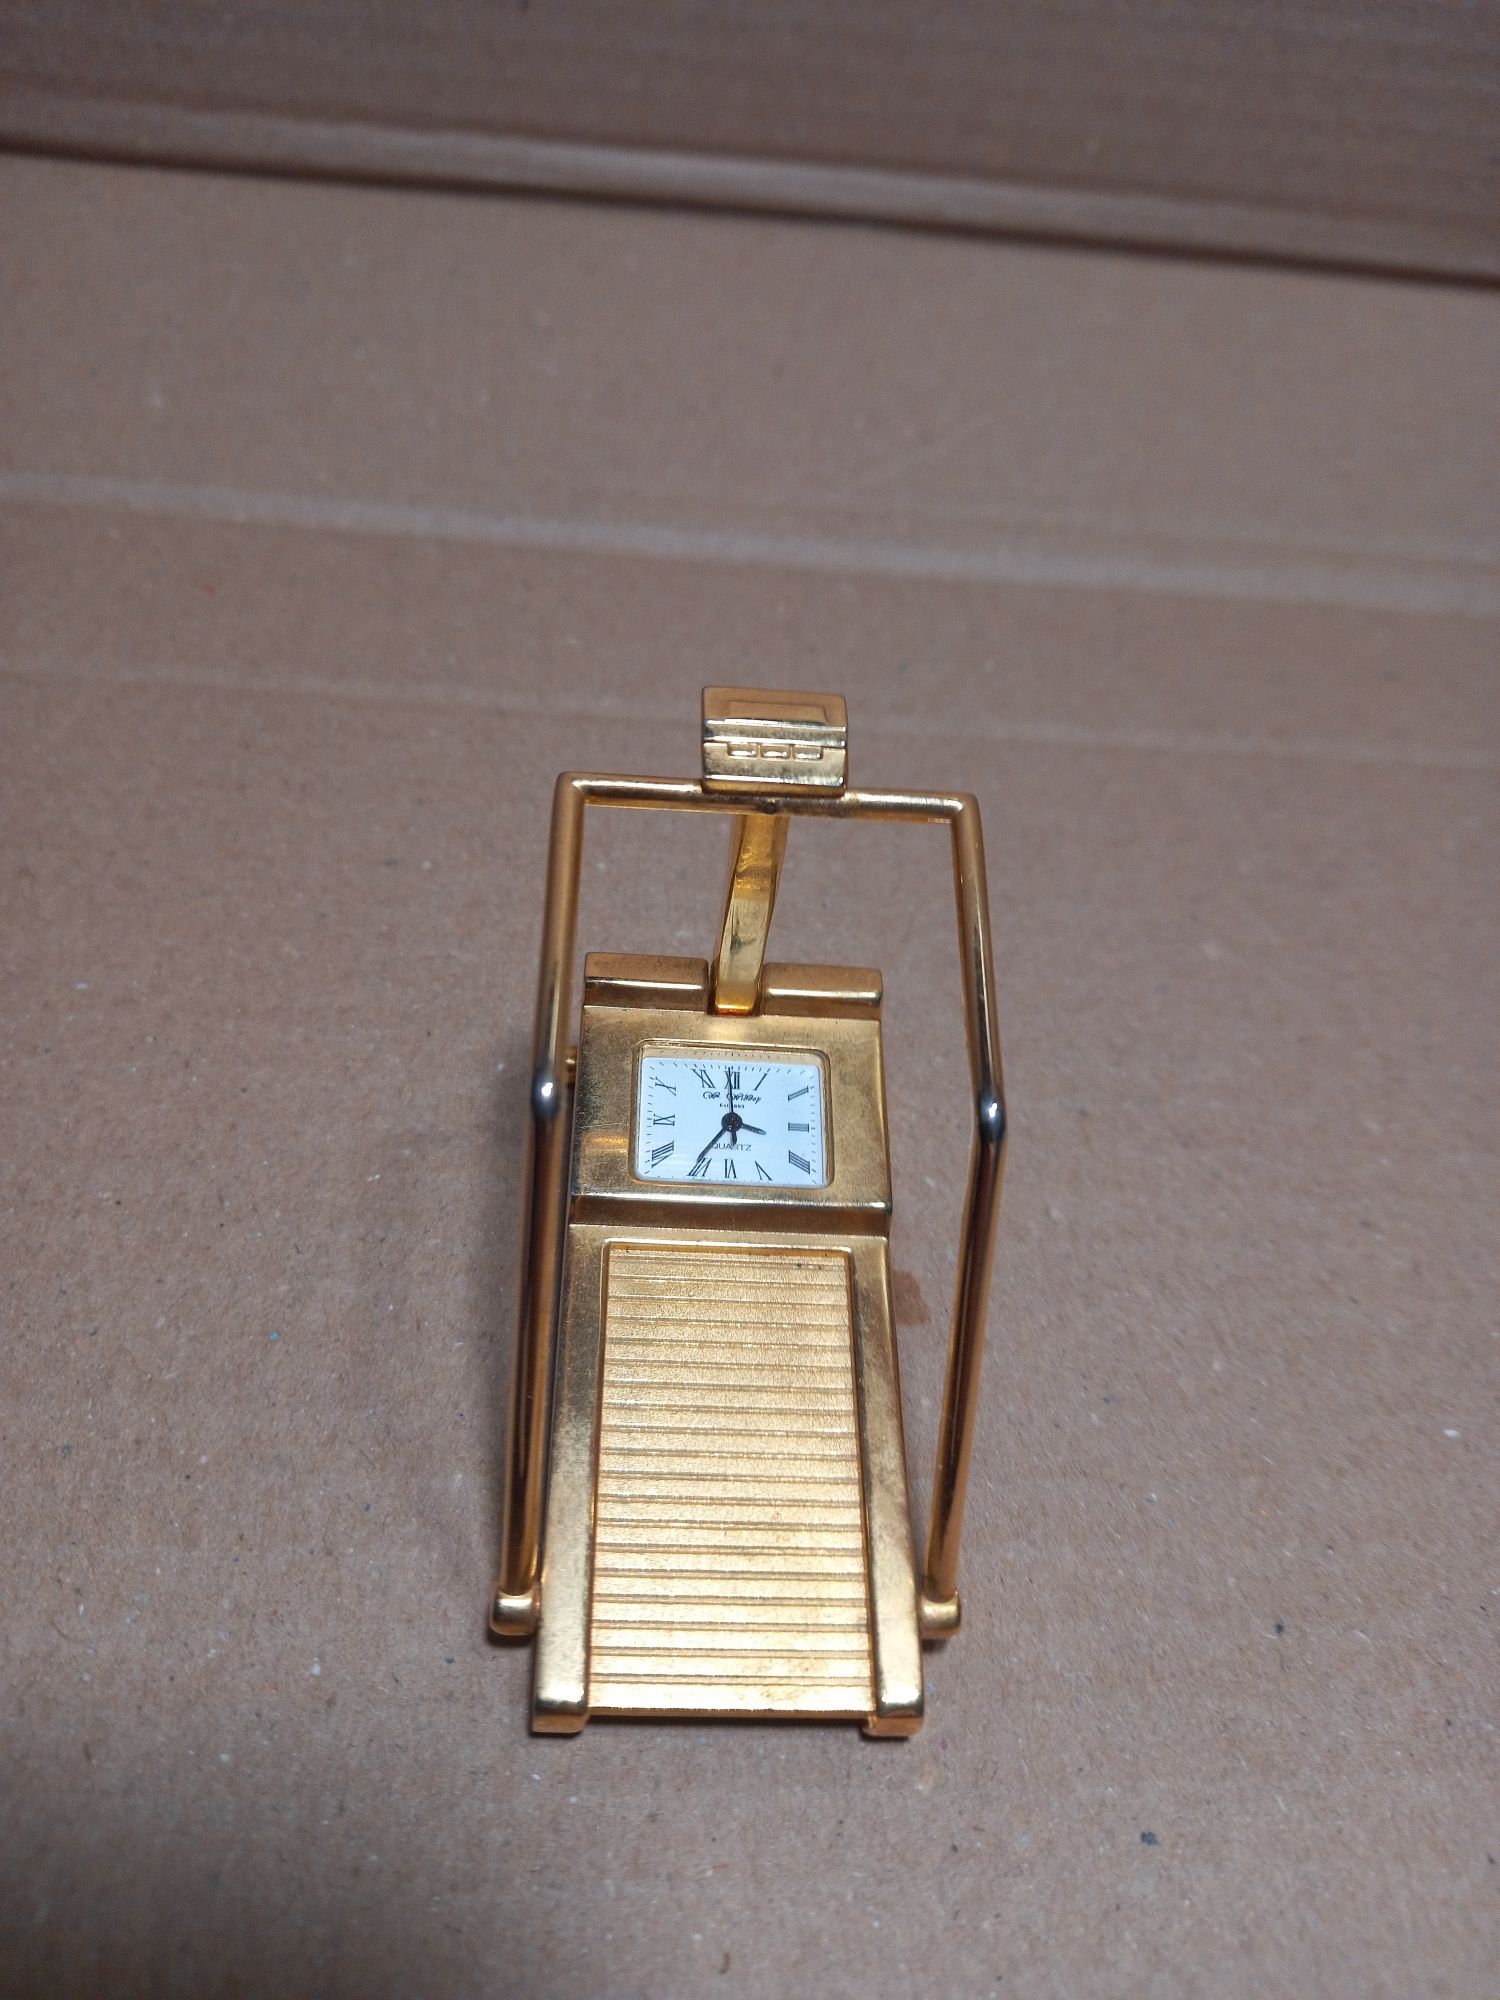 Zegar na bieżnię z kolekcji miniaturowych zegarów Widdop